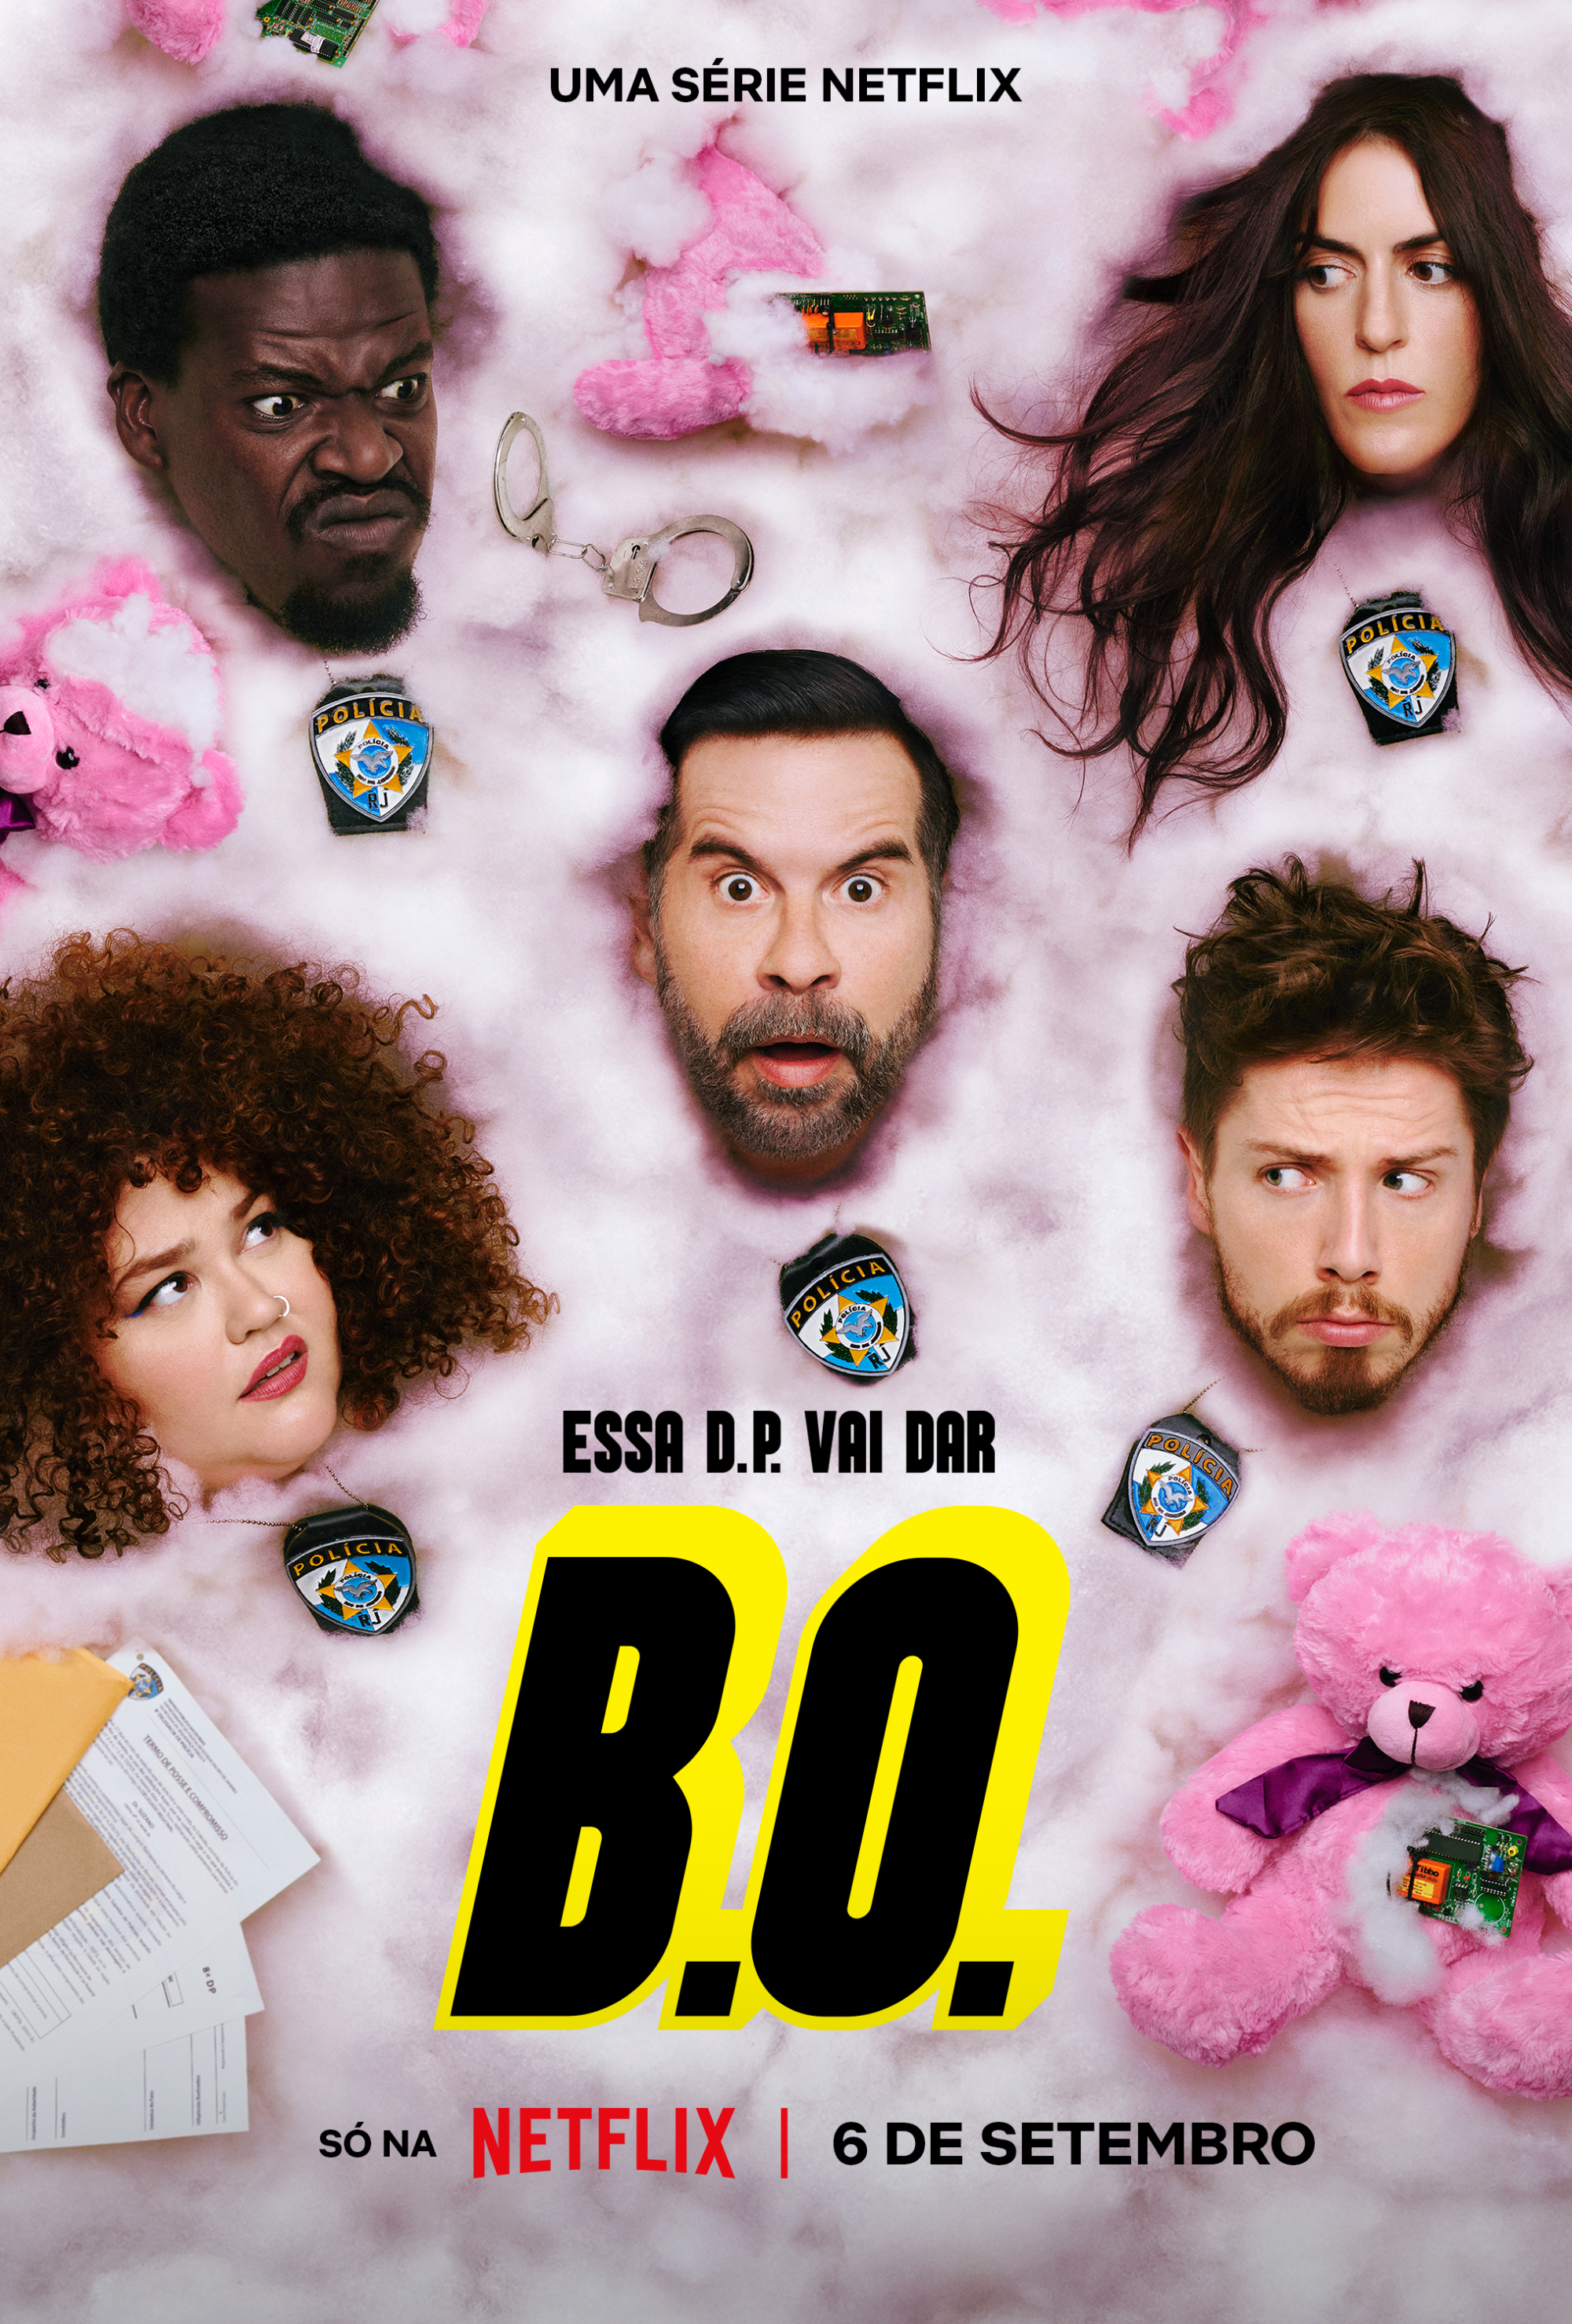 Essa delegacia vai dar muito B.O.! Primeira série de Leandro Hassum na Netflix  estreia em 6 de setembro - About Netflix